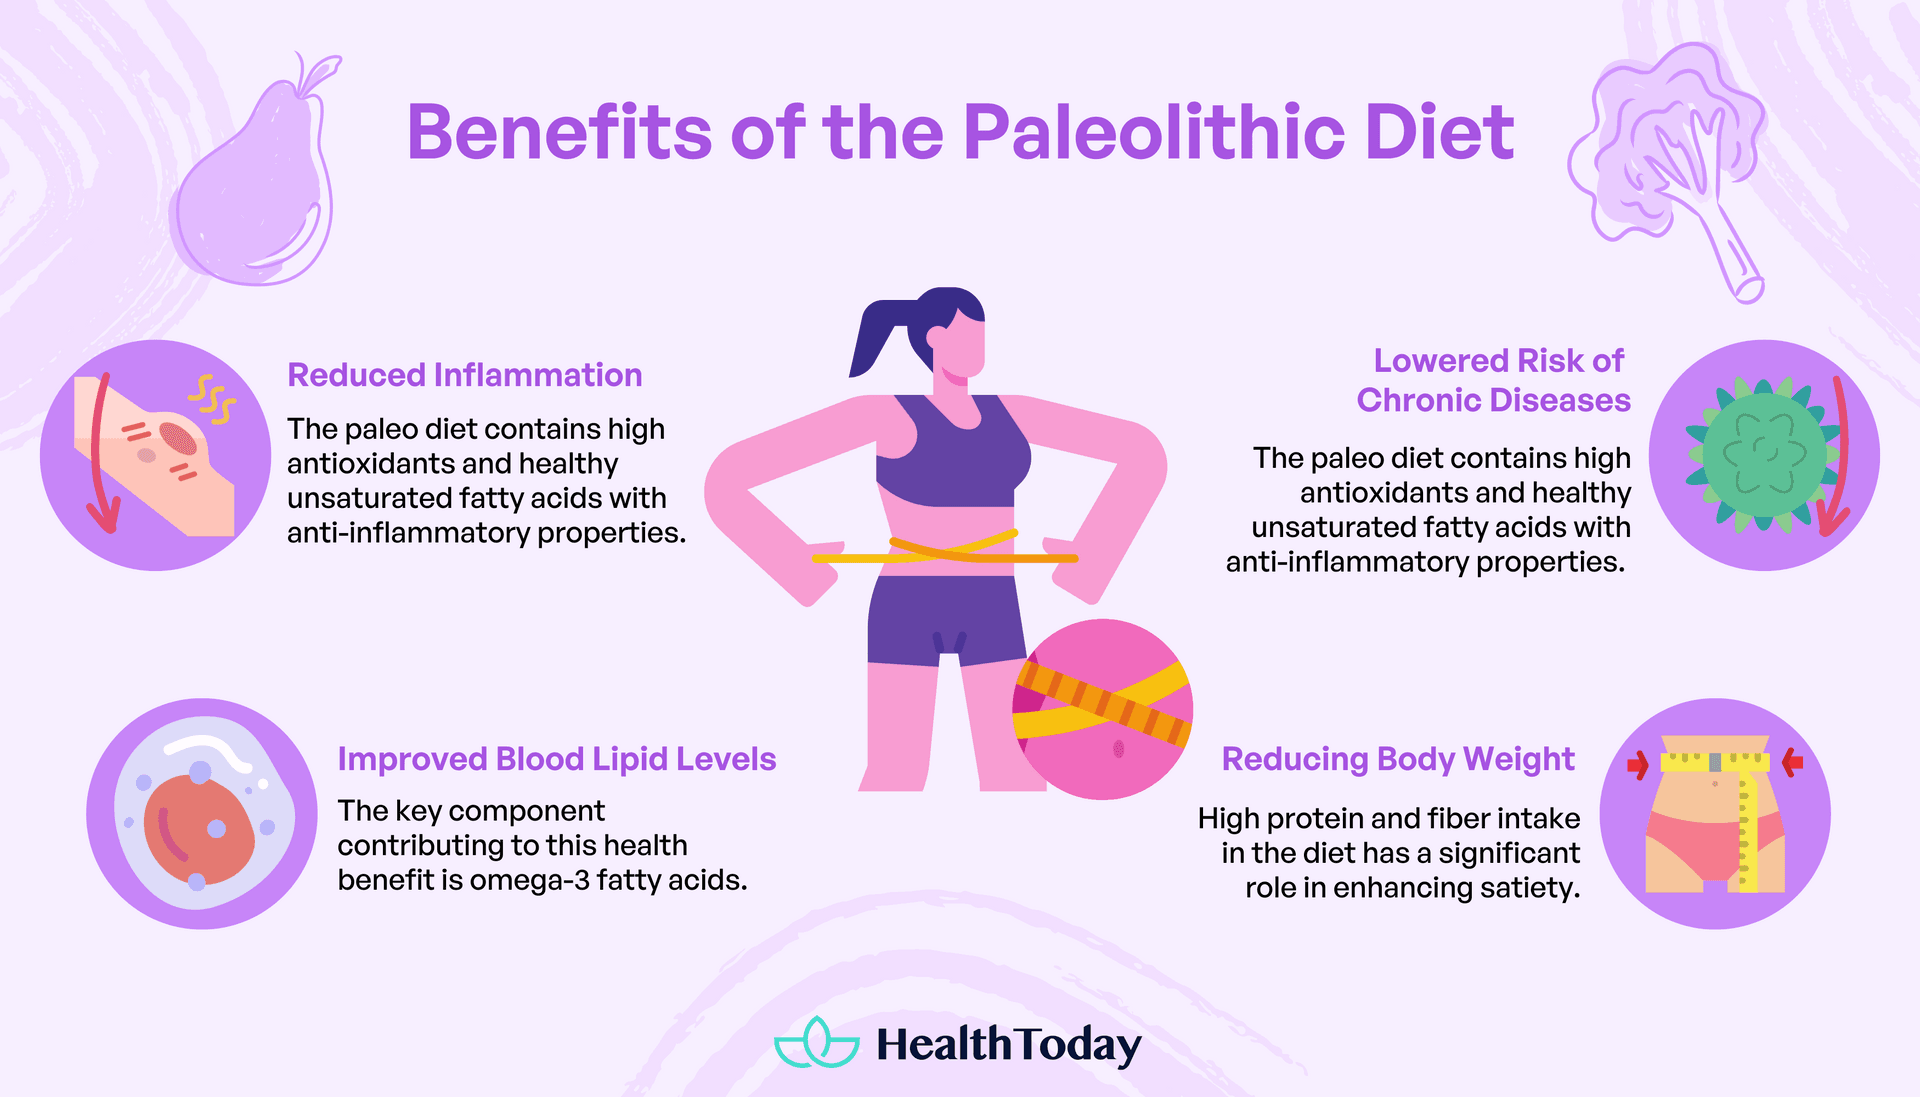 Benefits of Paleo diet